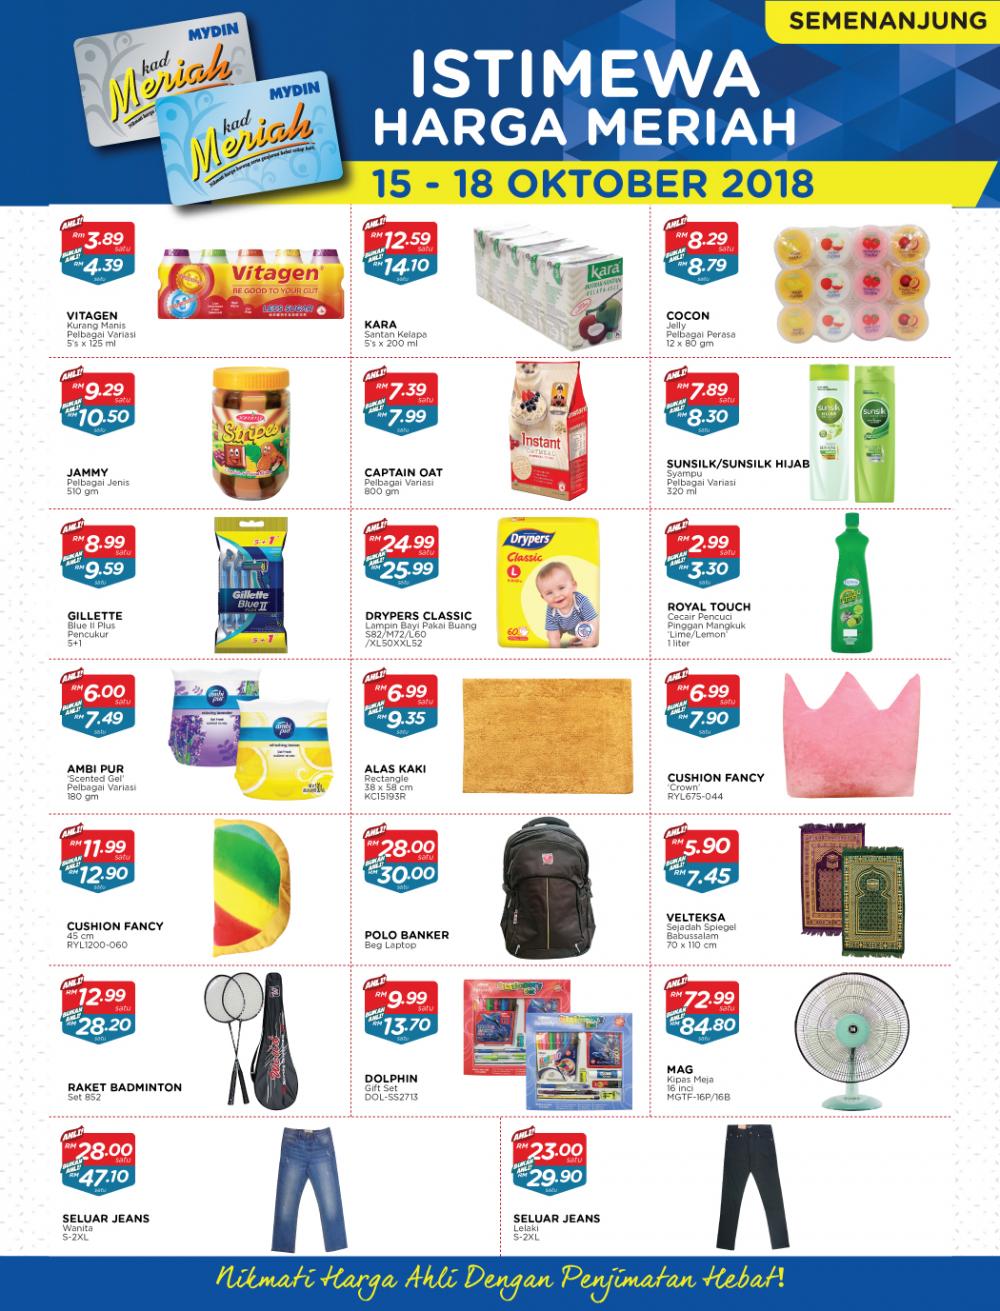 MYDIN Meriah Special Promotion (15 October 2018 - 18 October 2018)